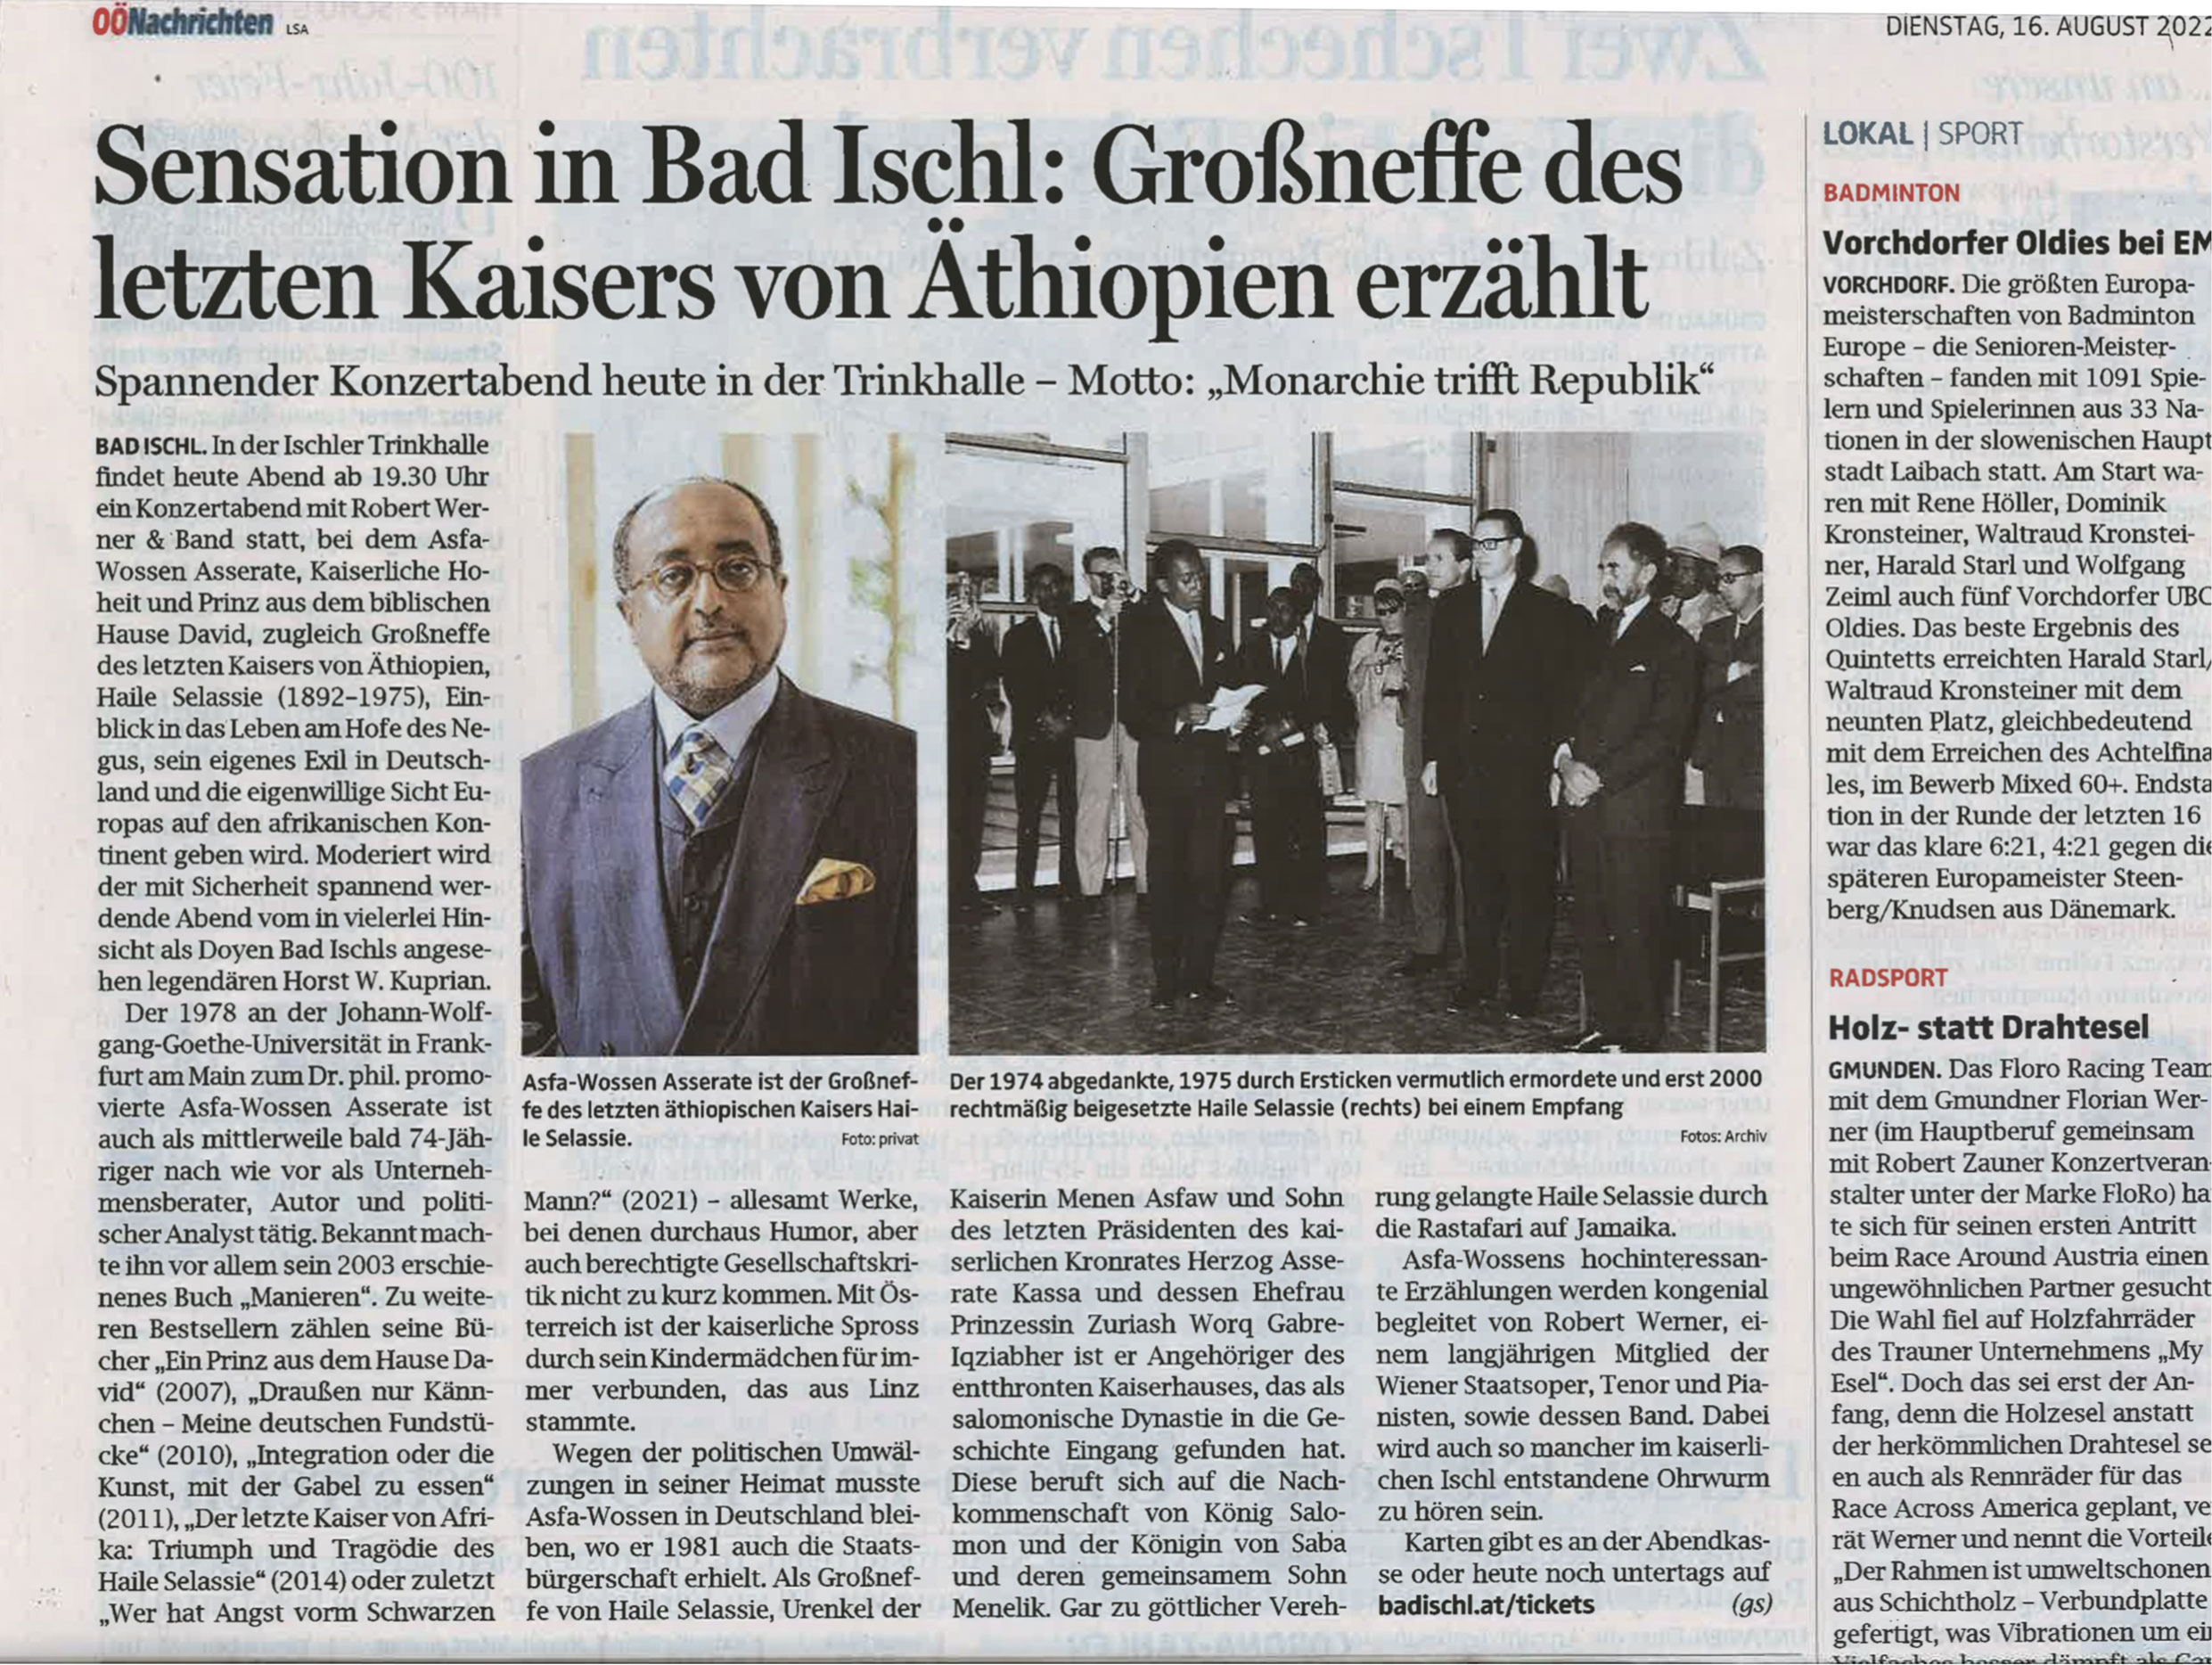 Pressebericht Robert Werner spielt anlässlich des Besuchs von Prinz Asserate ein Konzert in Bad Ischl